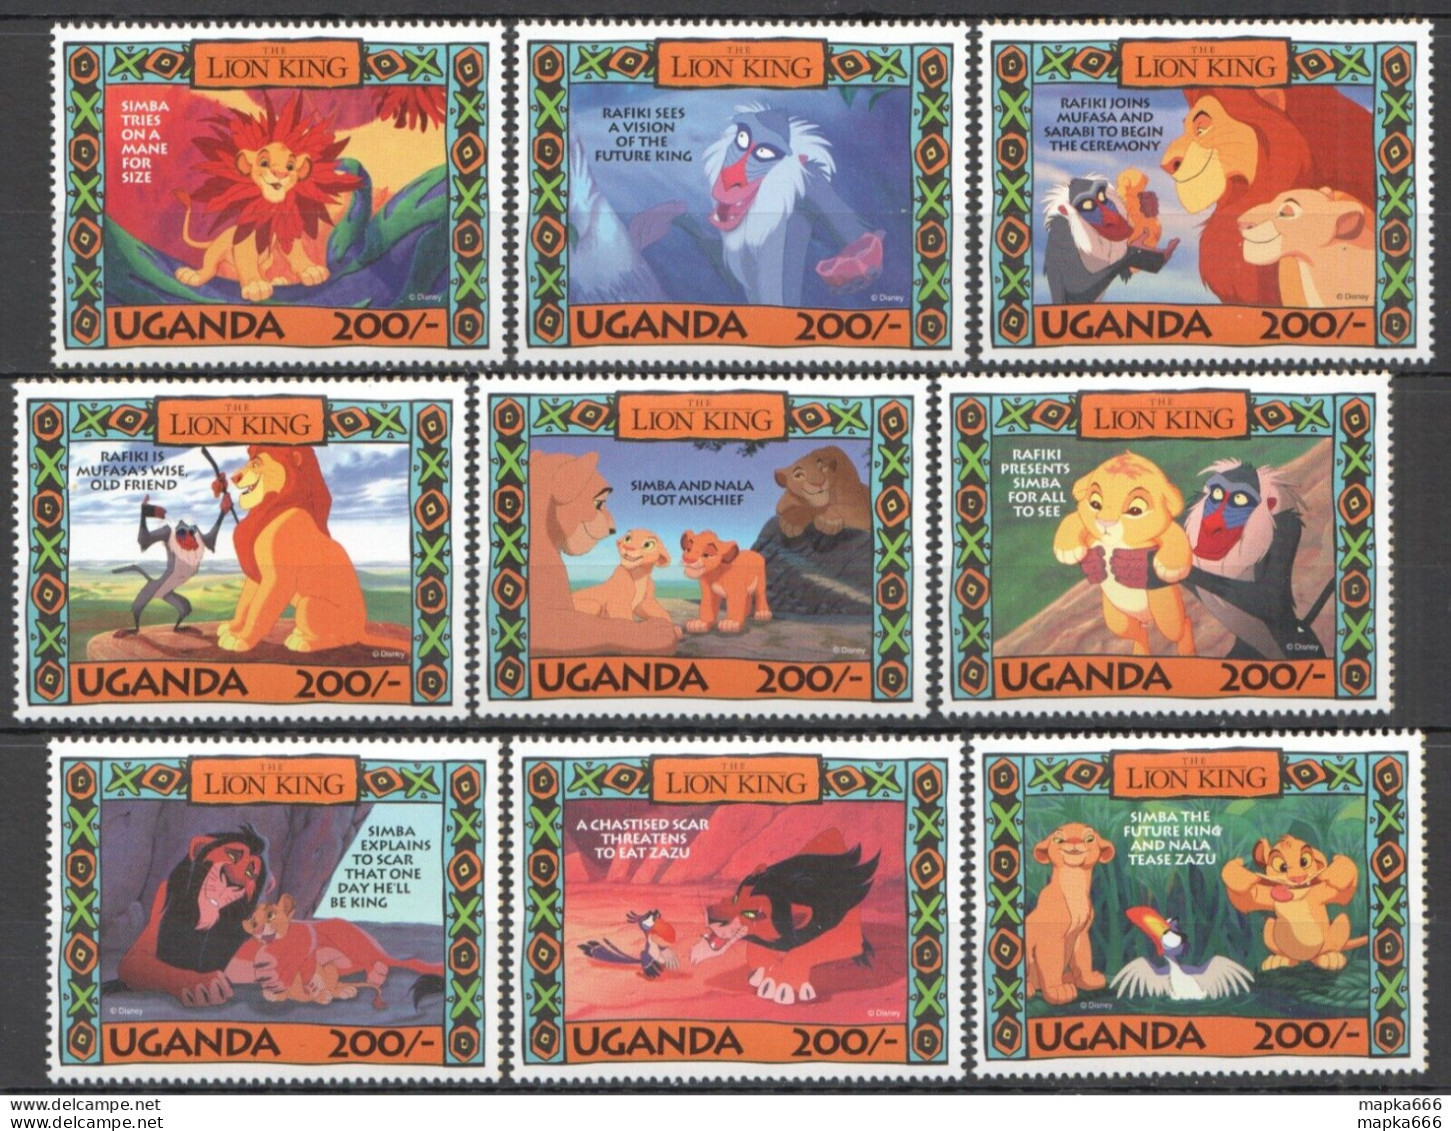 Ss1639 Uganda Walt Disney The Lion King Simba Mufasa Scar Cartoons 1Set Mnh - Disney